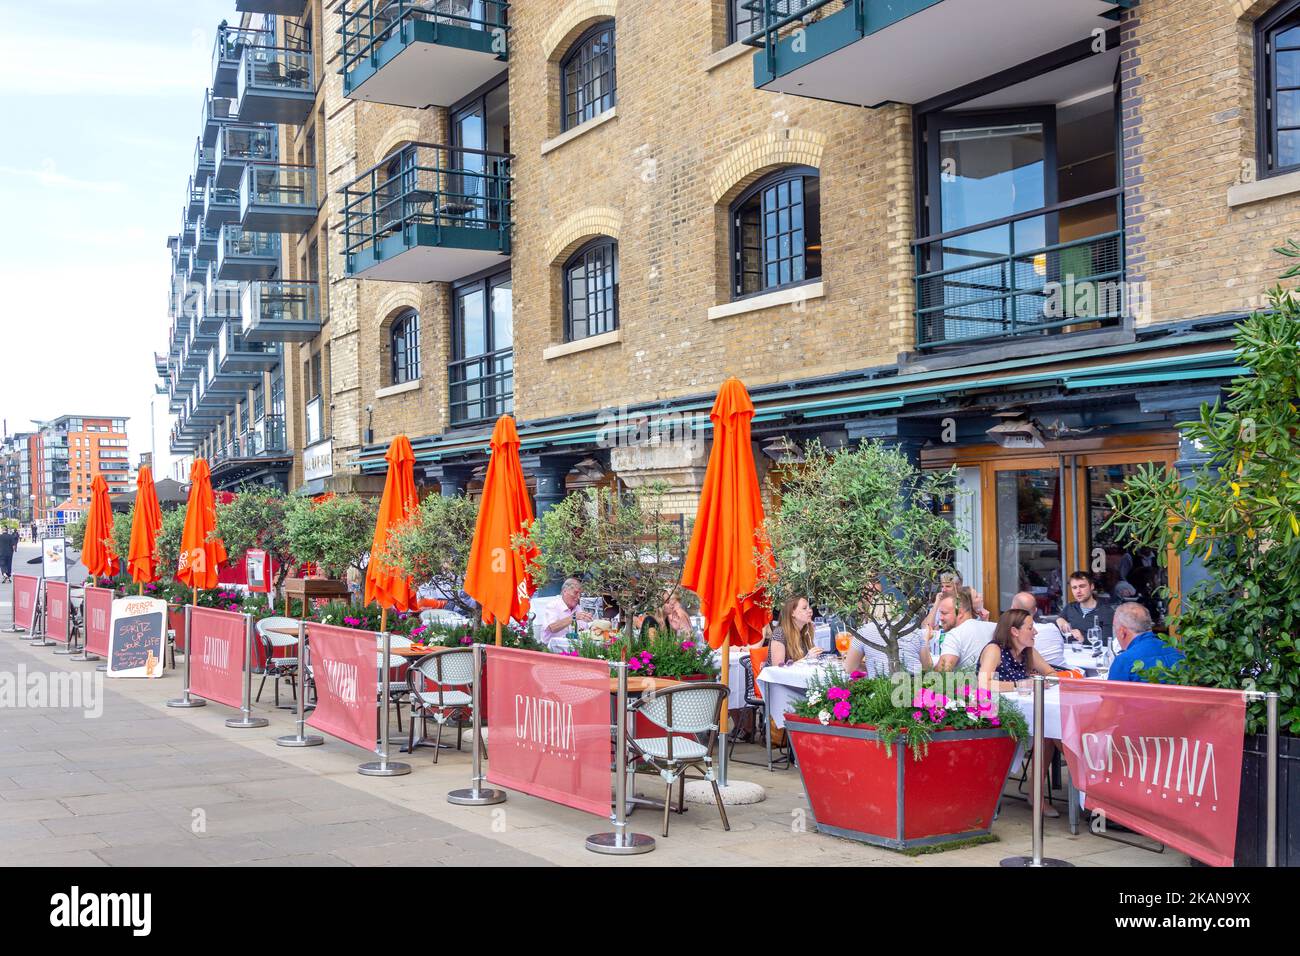 Terrasse extérieure, restaurant italien Cantina del Ponte, Butlers Wharf, Bermondsey, le quartier londonien de Southwark, Grand Londres, Angleterre, United Kin Banque D'Images